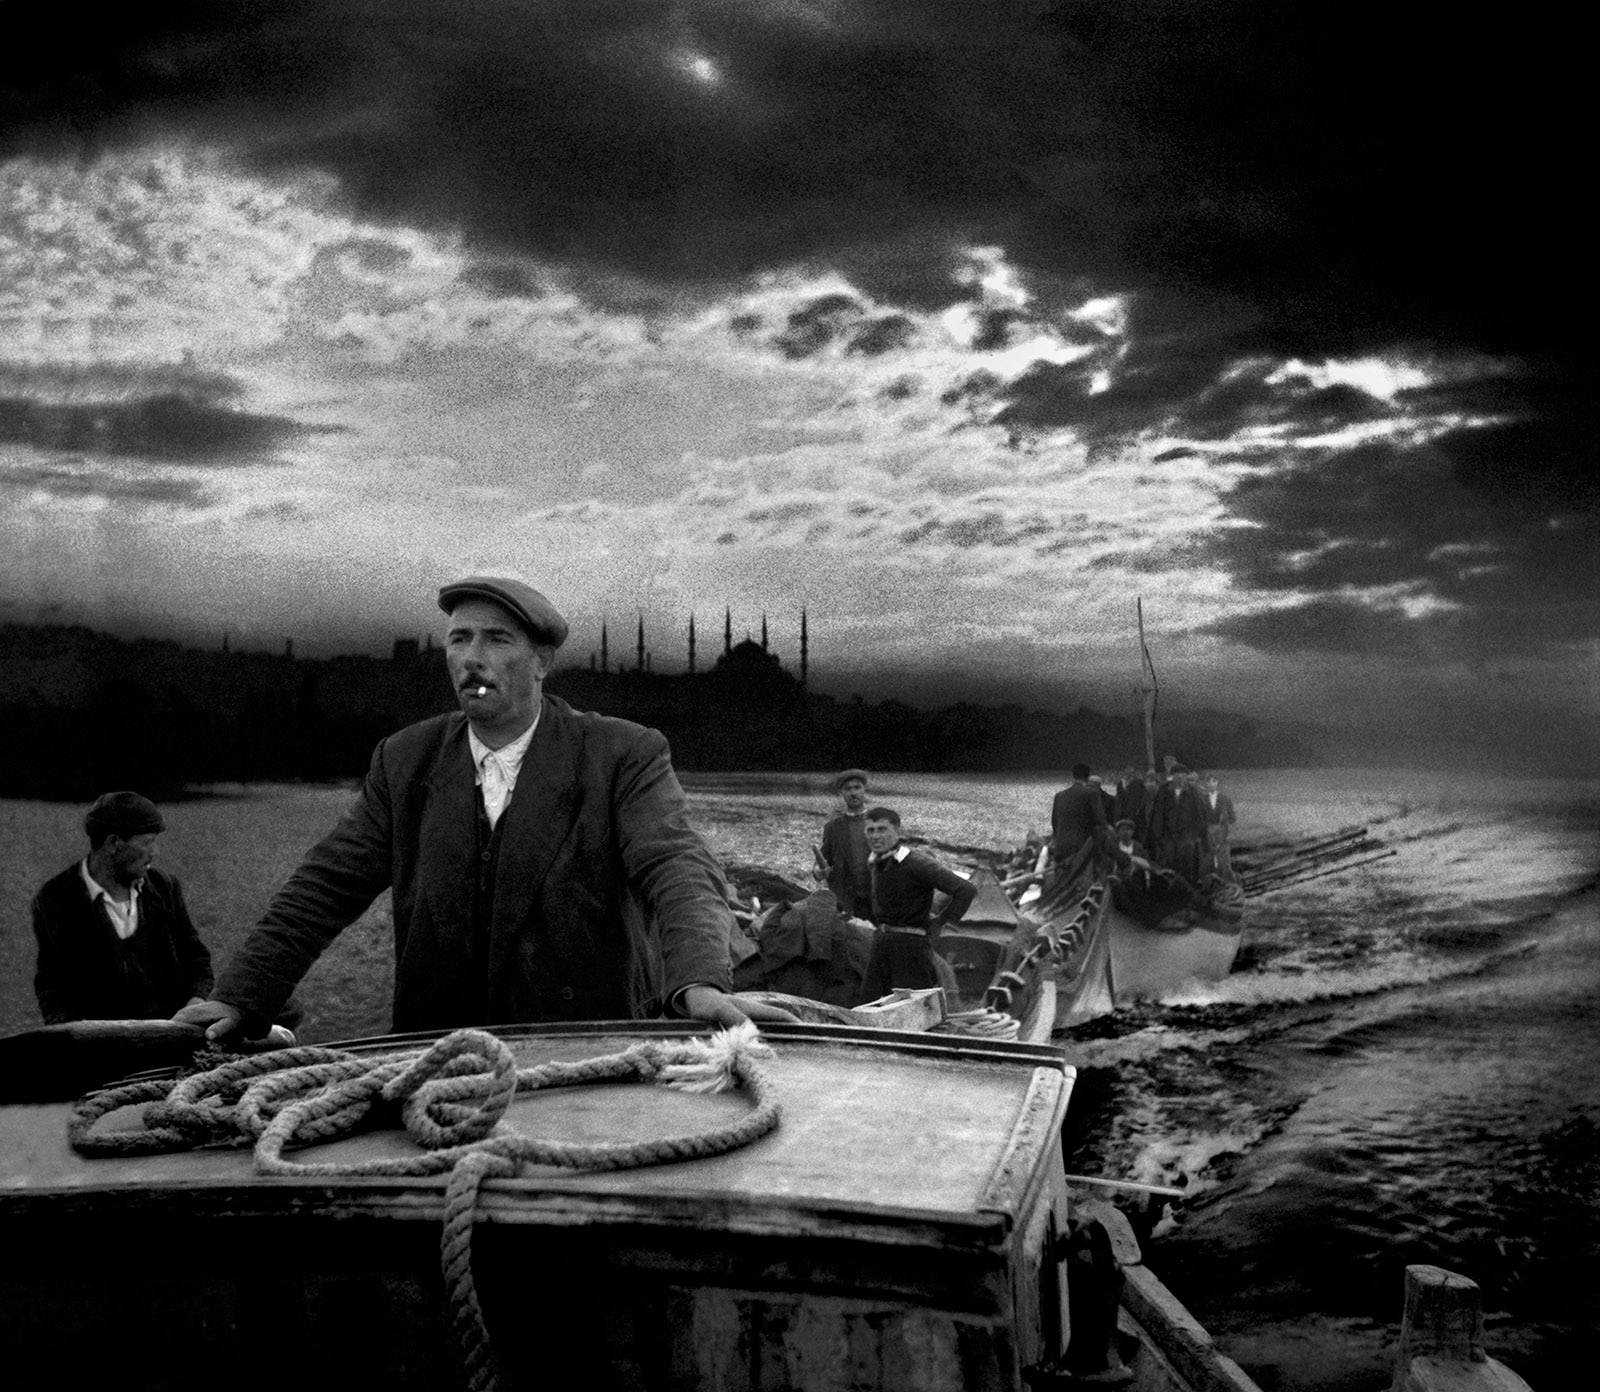 Kumkapı fishermen returning to port at dawn, Istanbul, 1950